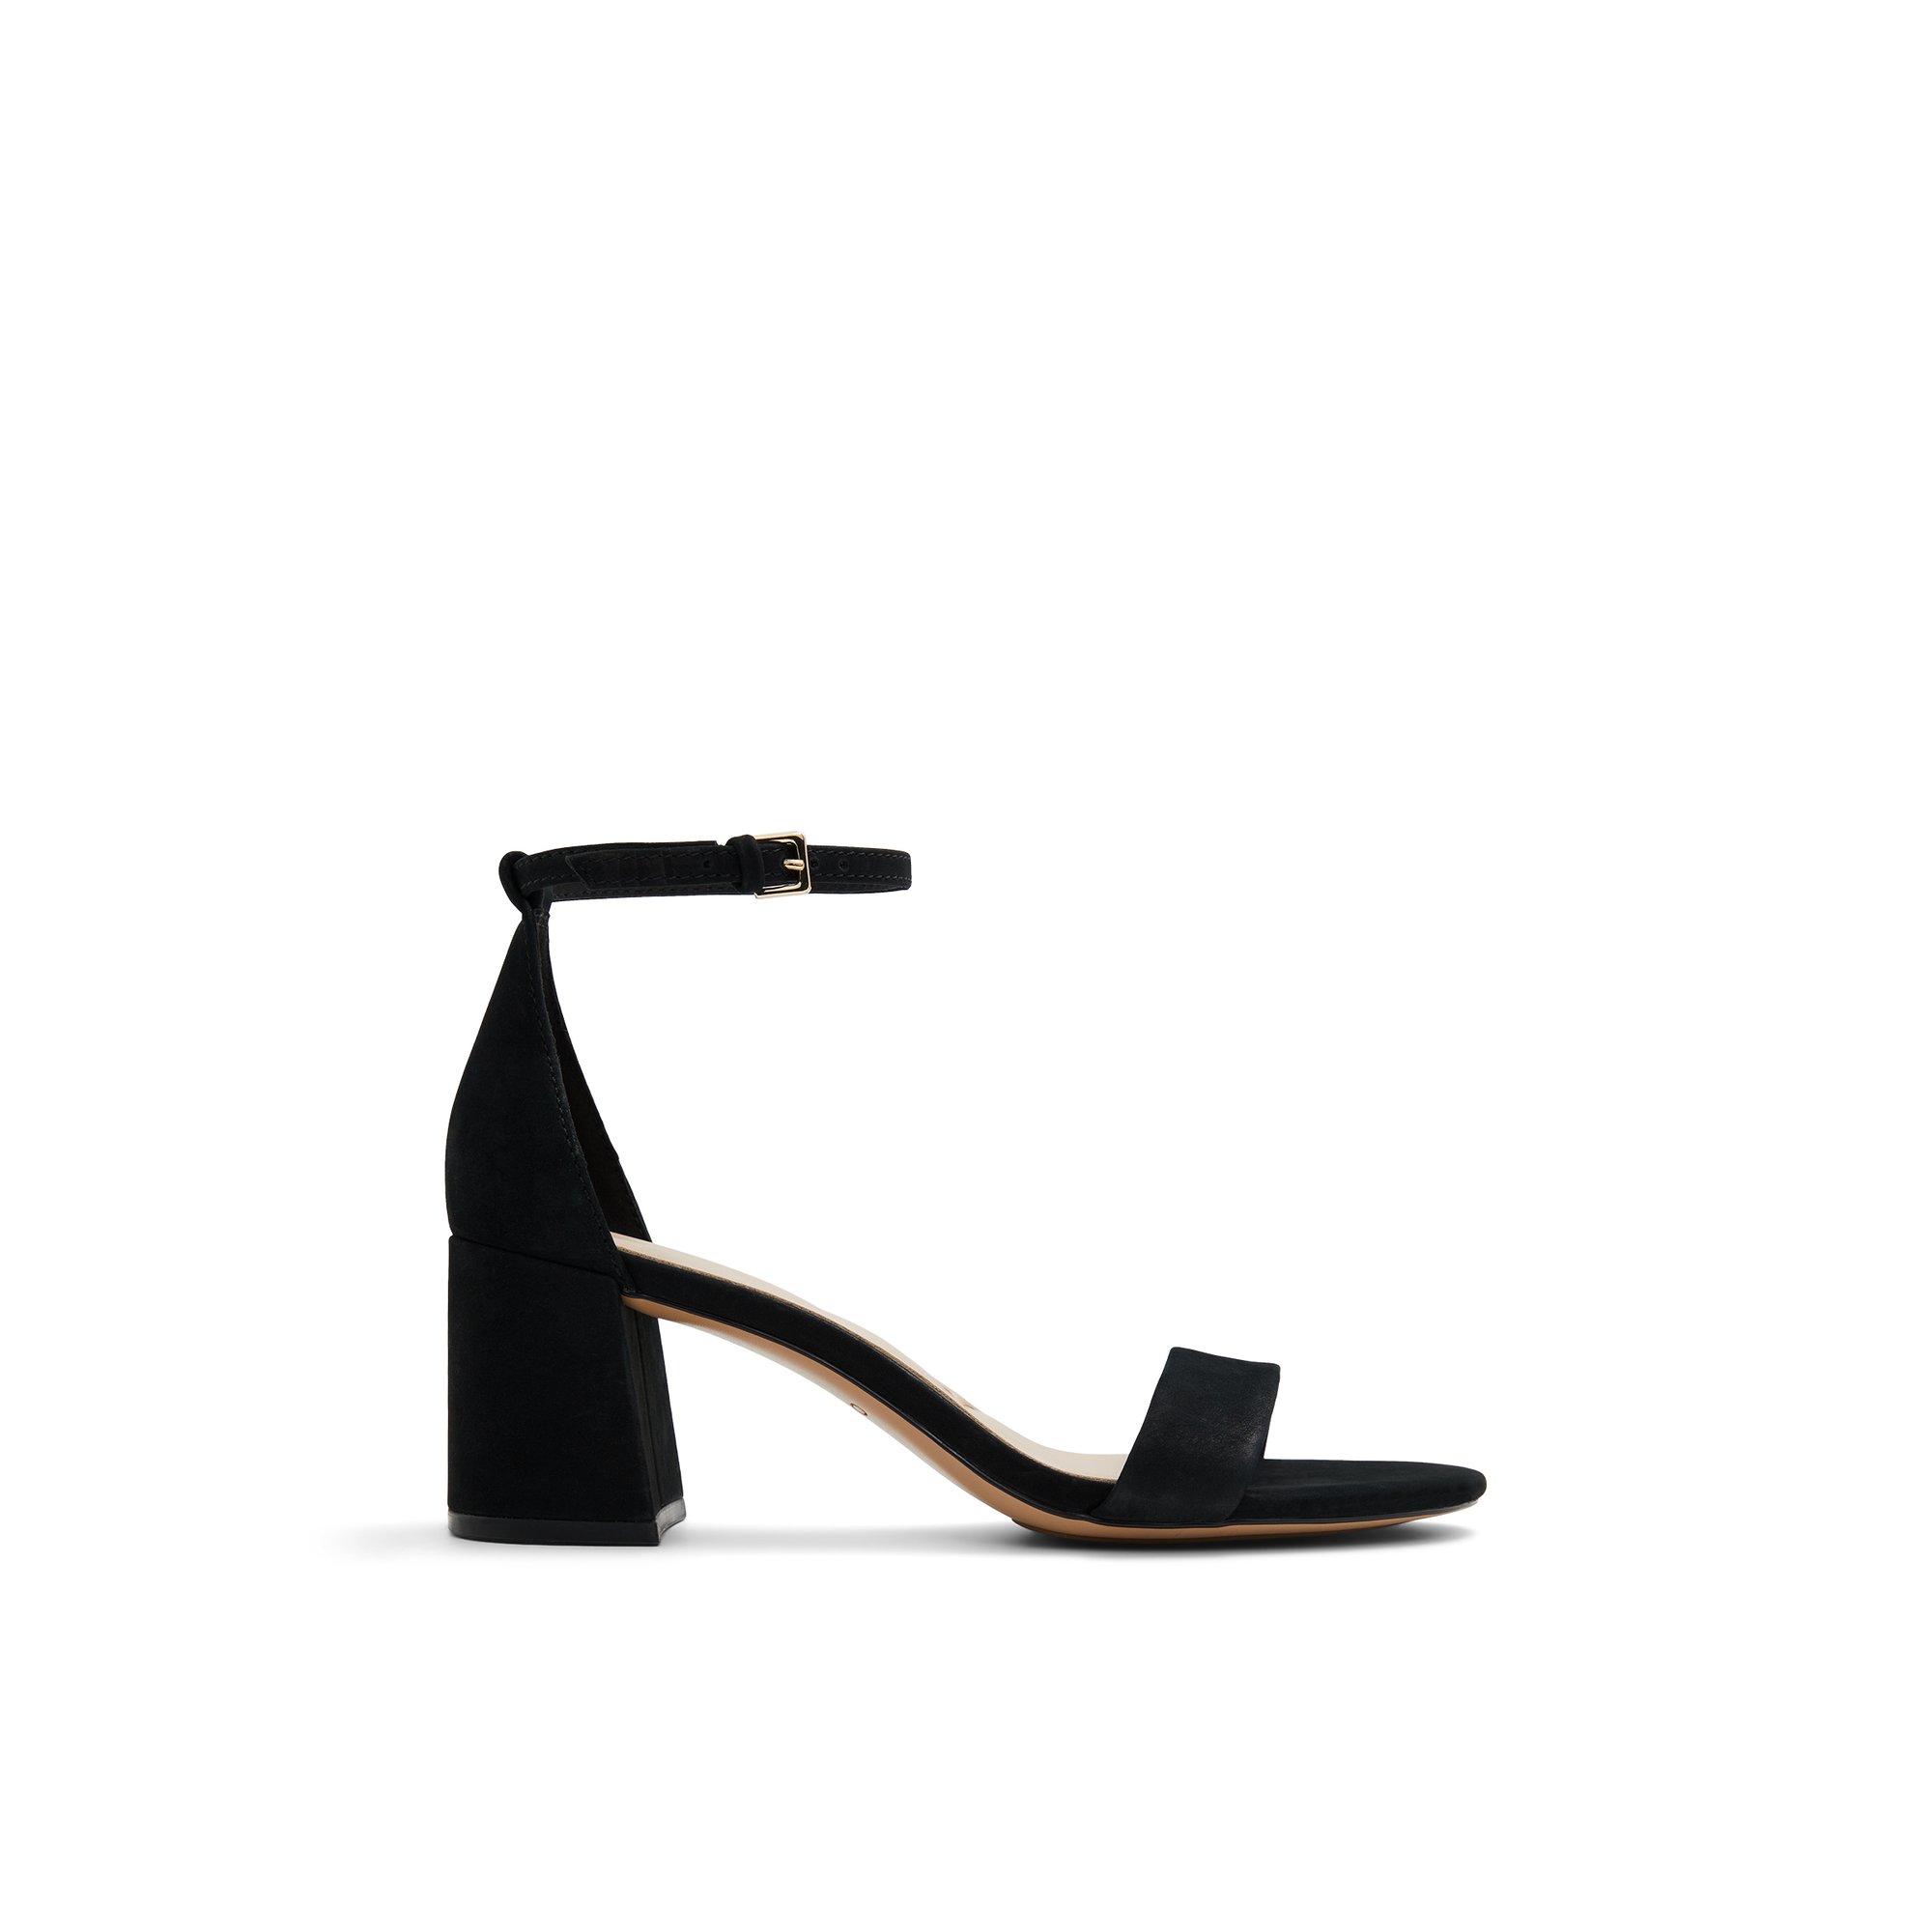 ALDO Pristine - Women's Sandals Strappy - Black